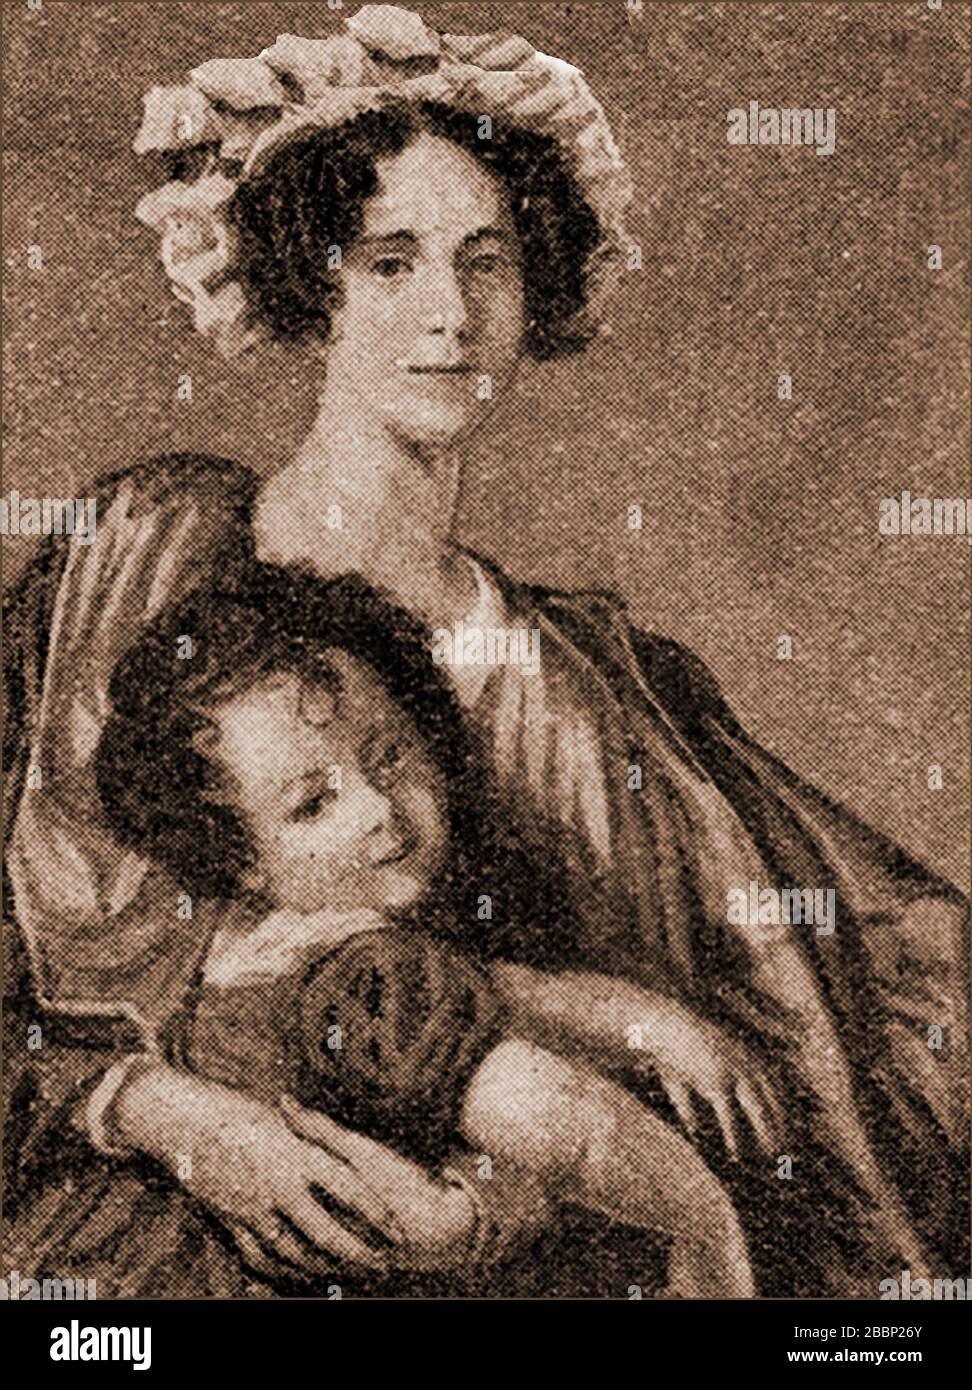 Ein frühes Porträt von James Clerk Maxwell als Junge bei seiner Mutter. (Frances Cay). Maxwell (1831-1879) war ein schottischer Wissenschaftler und mathematischer Physiker. Stockfoto